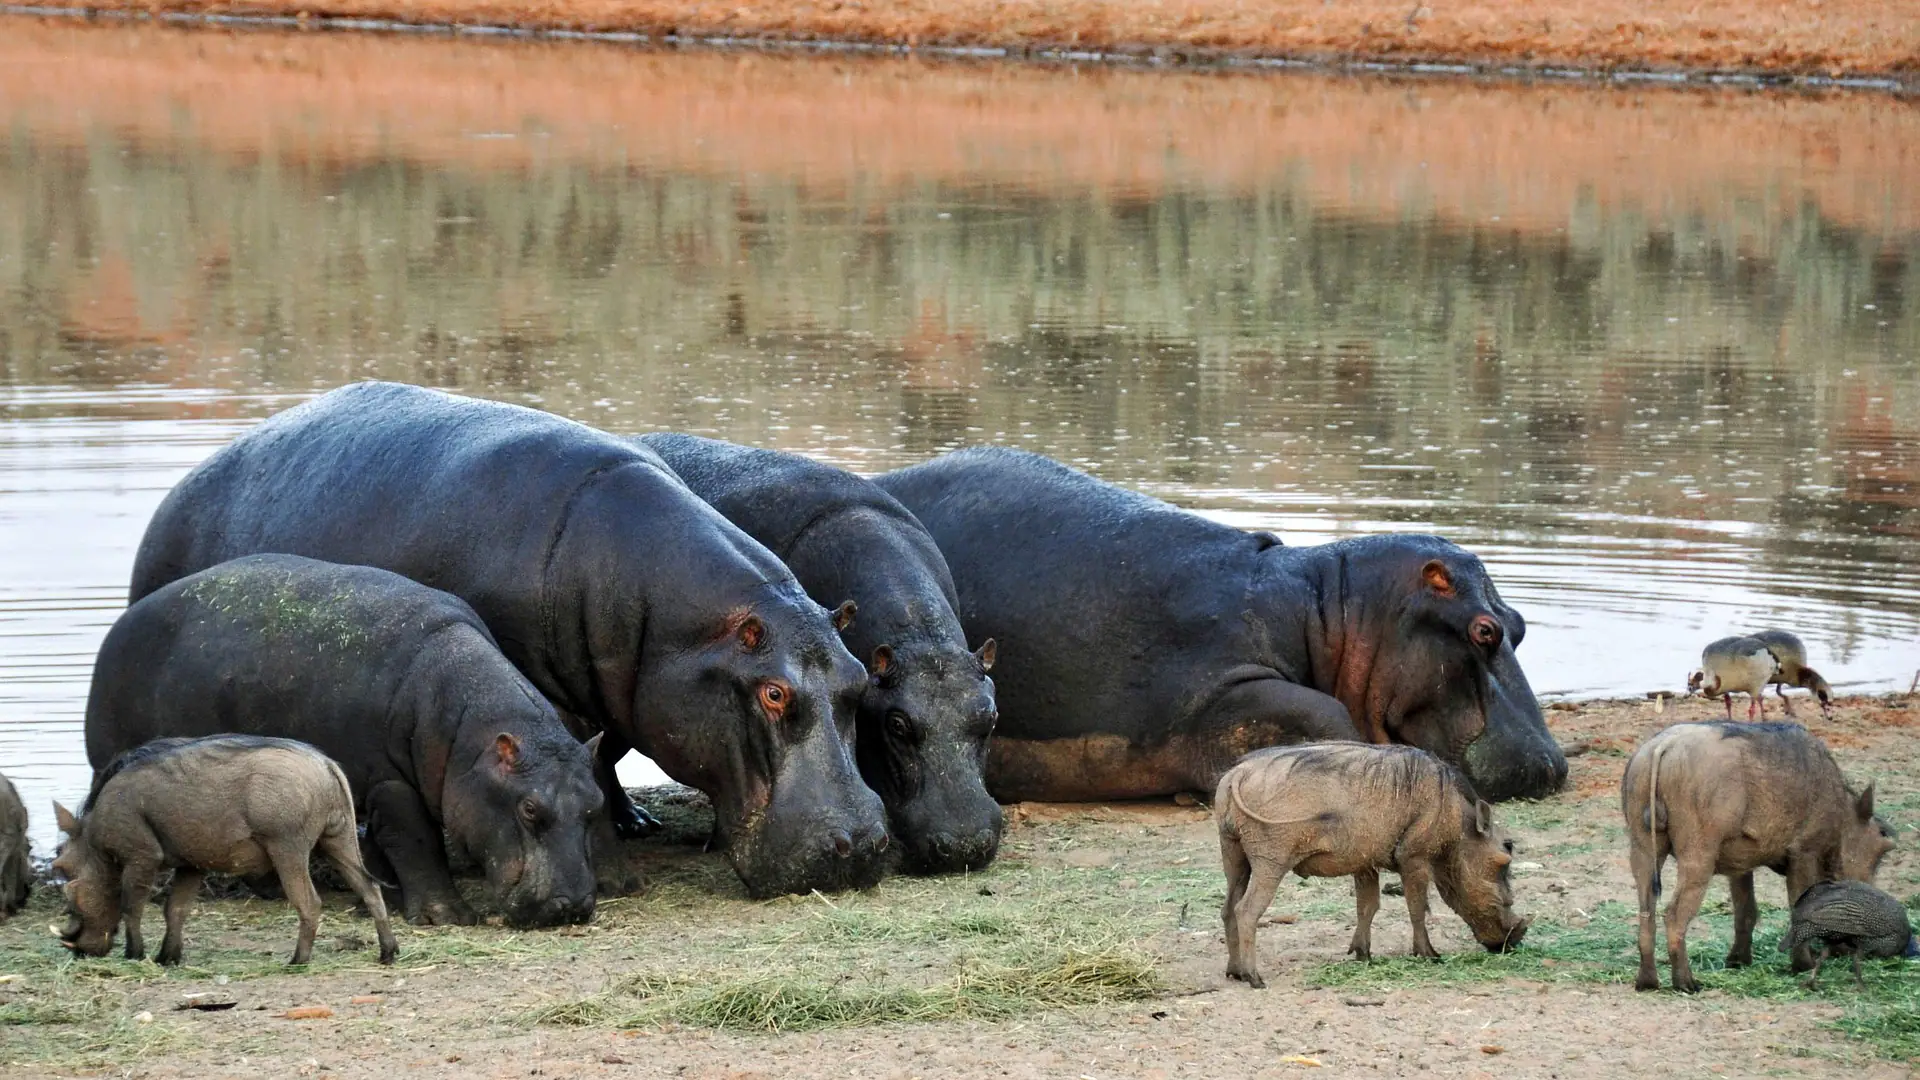 Kenya animals- the hippopotamus